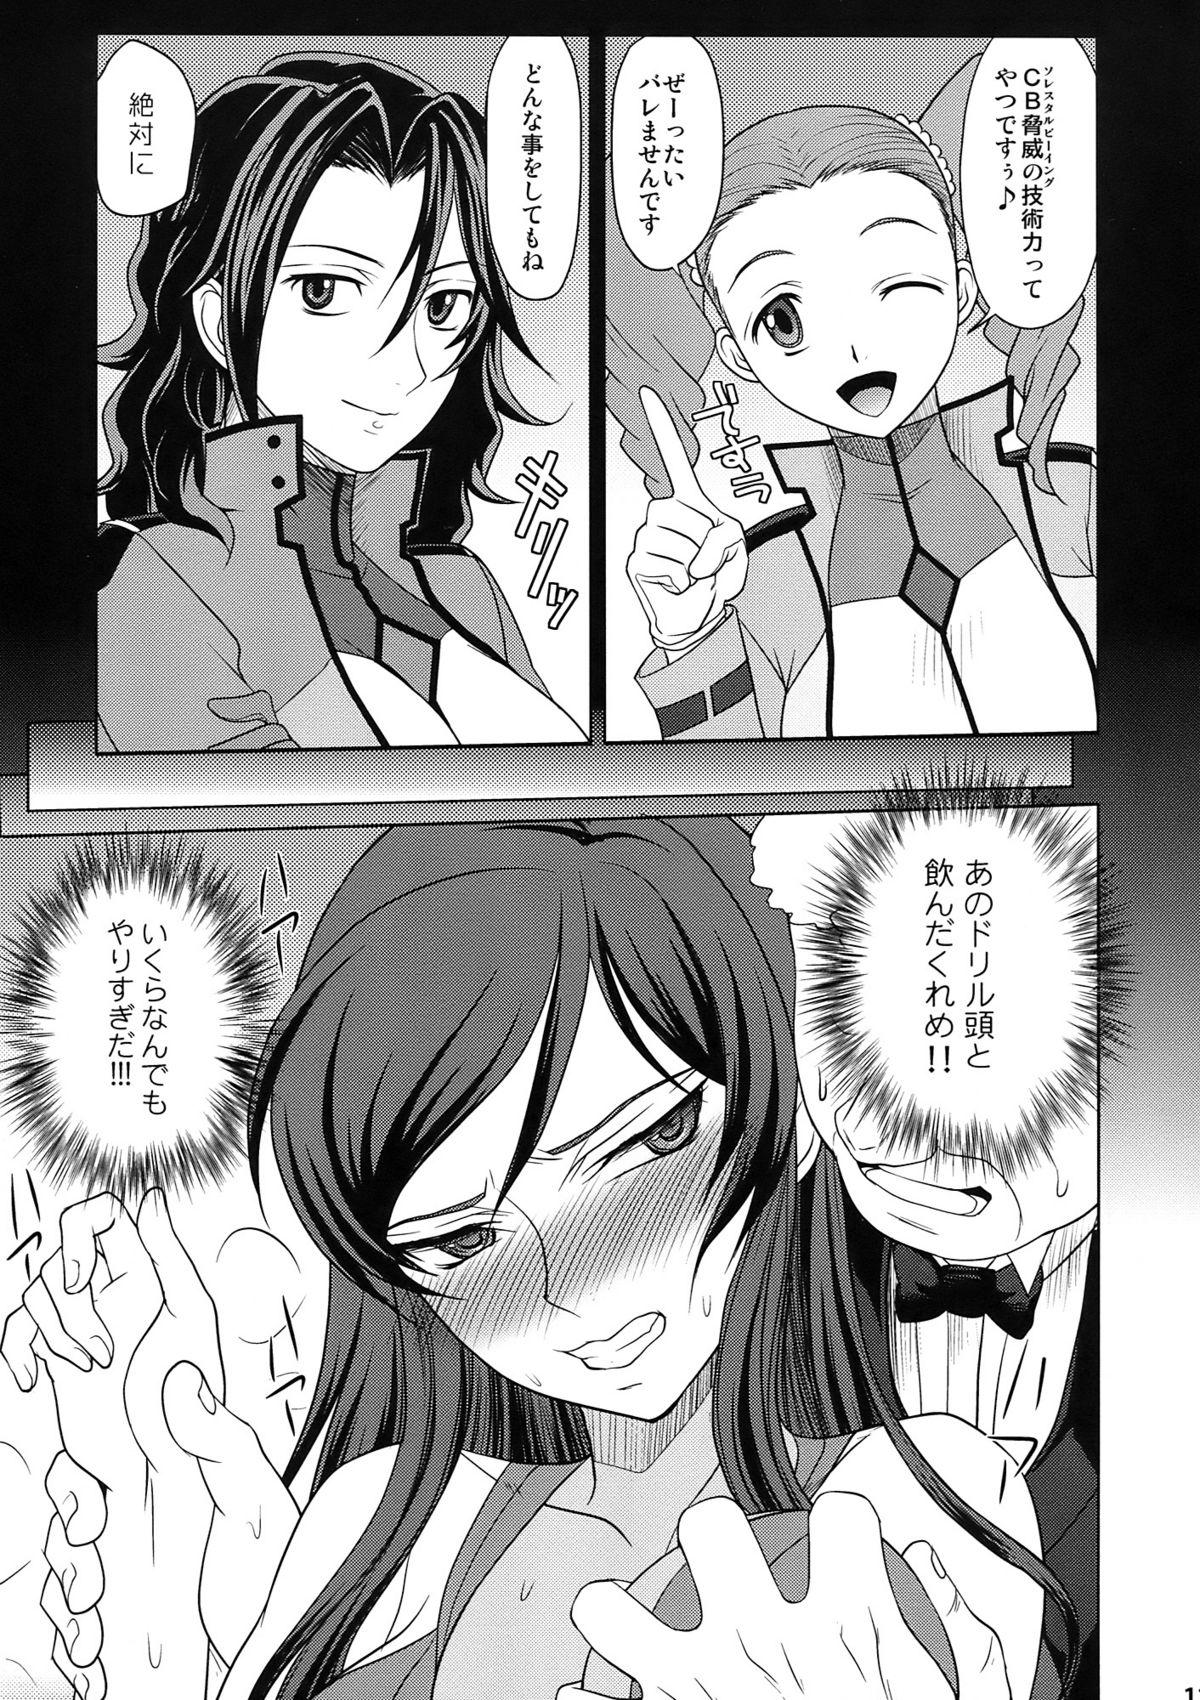 18 Year Old Porn KETSU!MEGATON DY - Gundam 00 Gaycum - Page 11